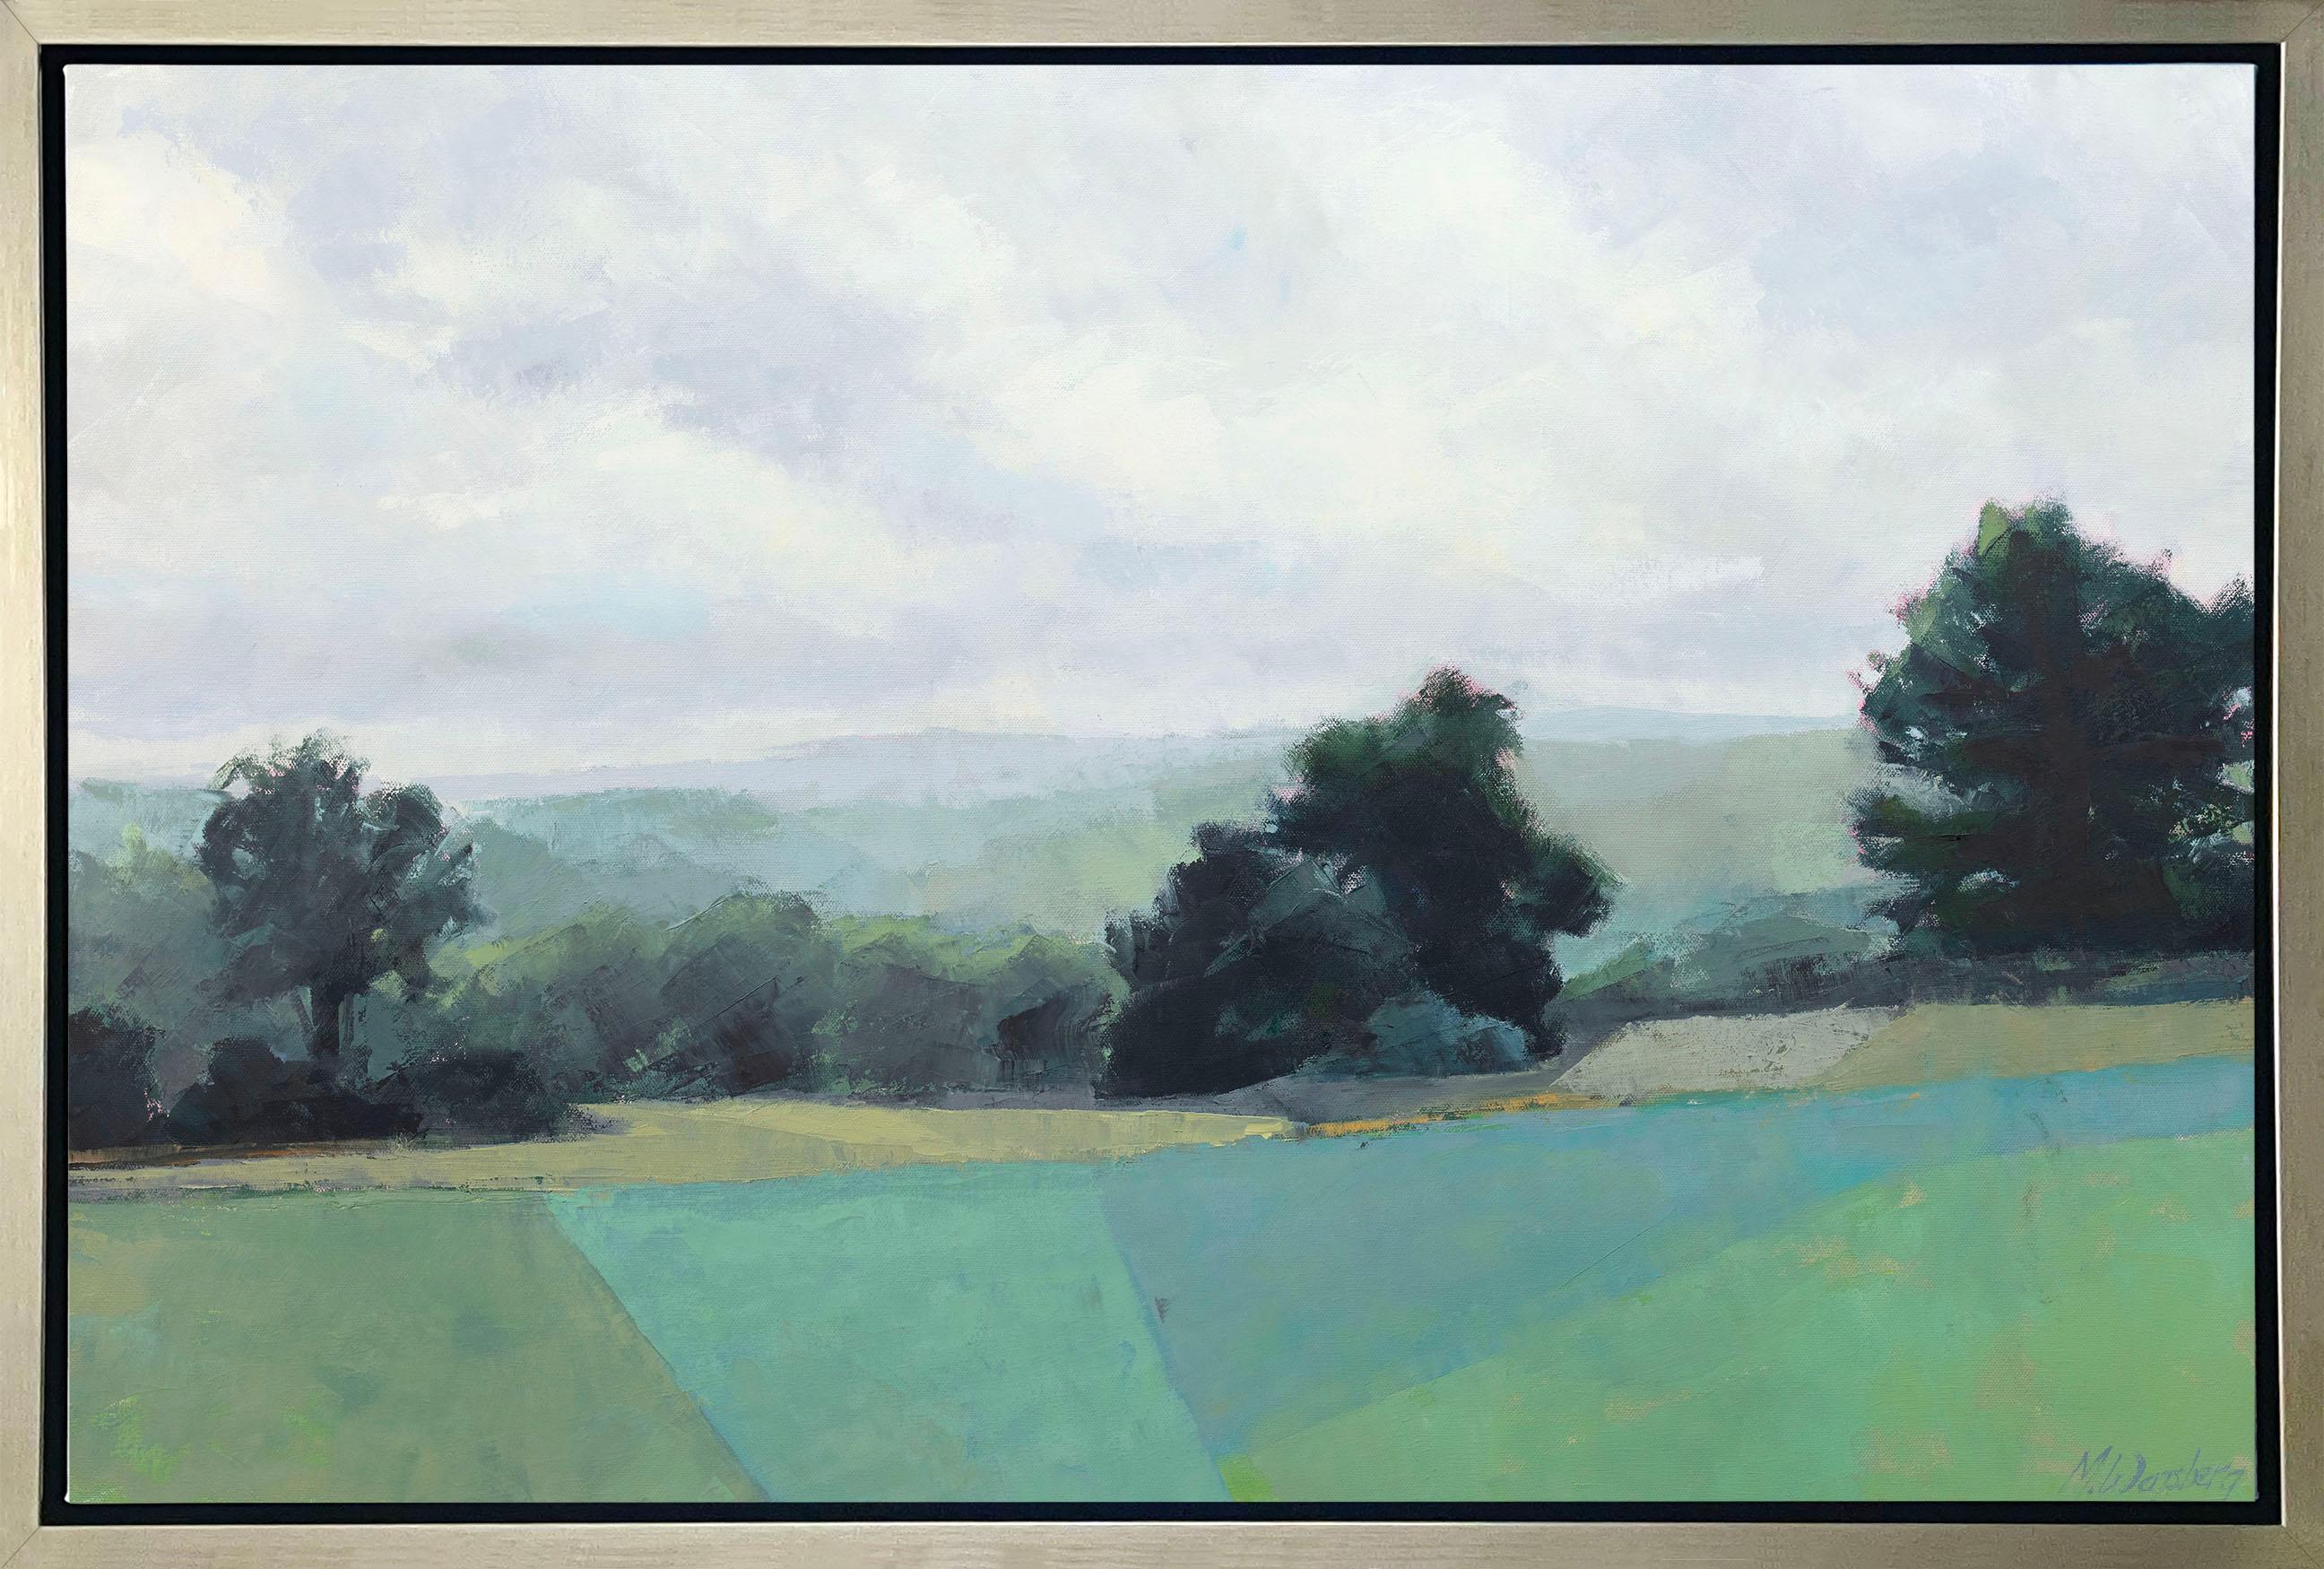 Molly Doe Wensberg Landscape Print - "Green Surrender" Framed Limited Edition Print, 36" x 54"